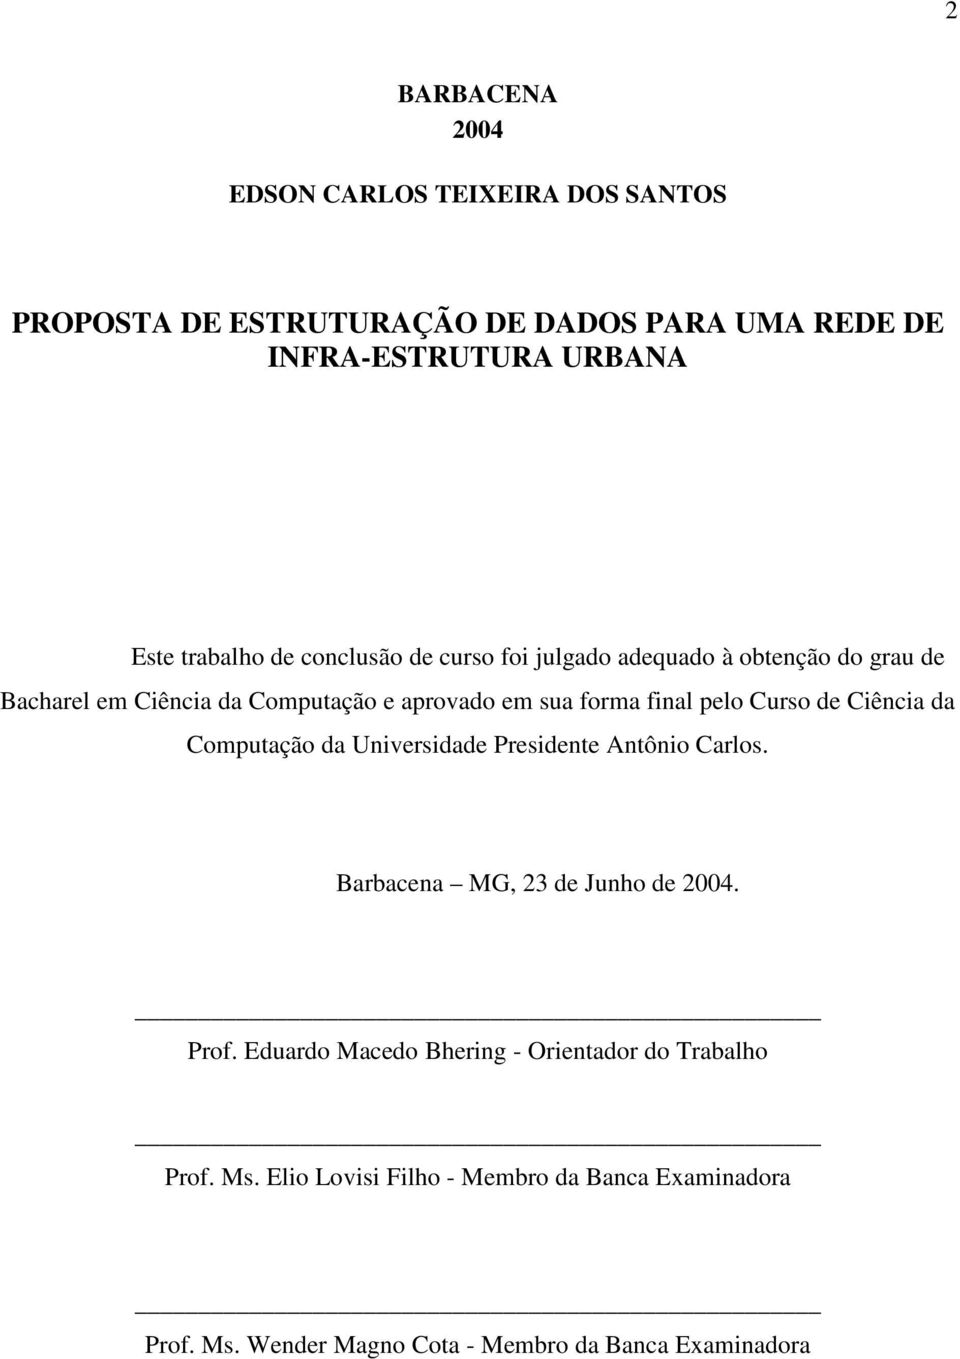 Curso de Ciência da Computação da Universidade Presidente Antônio Carlos. Barbacena MG, 23 de Junho de 2004. Prof.